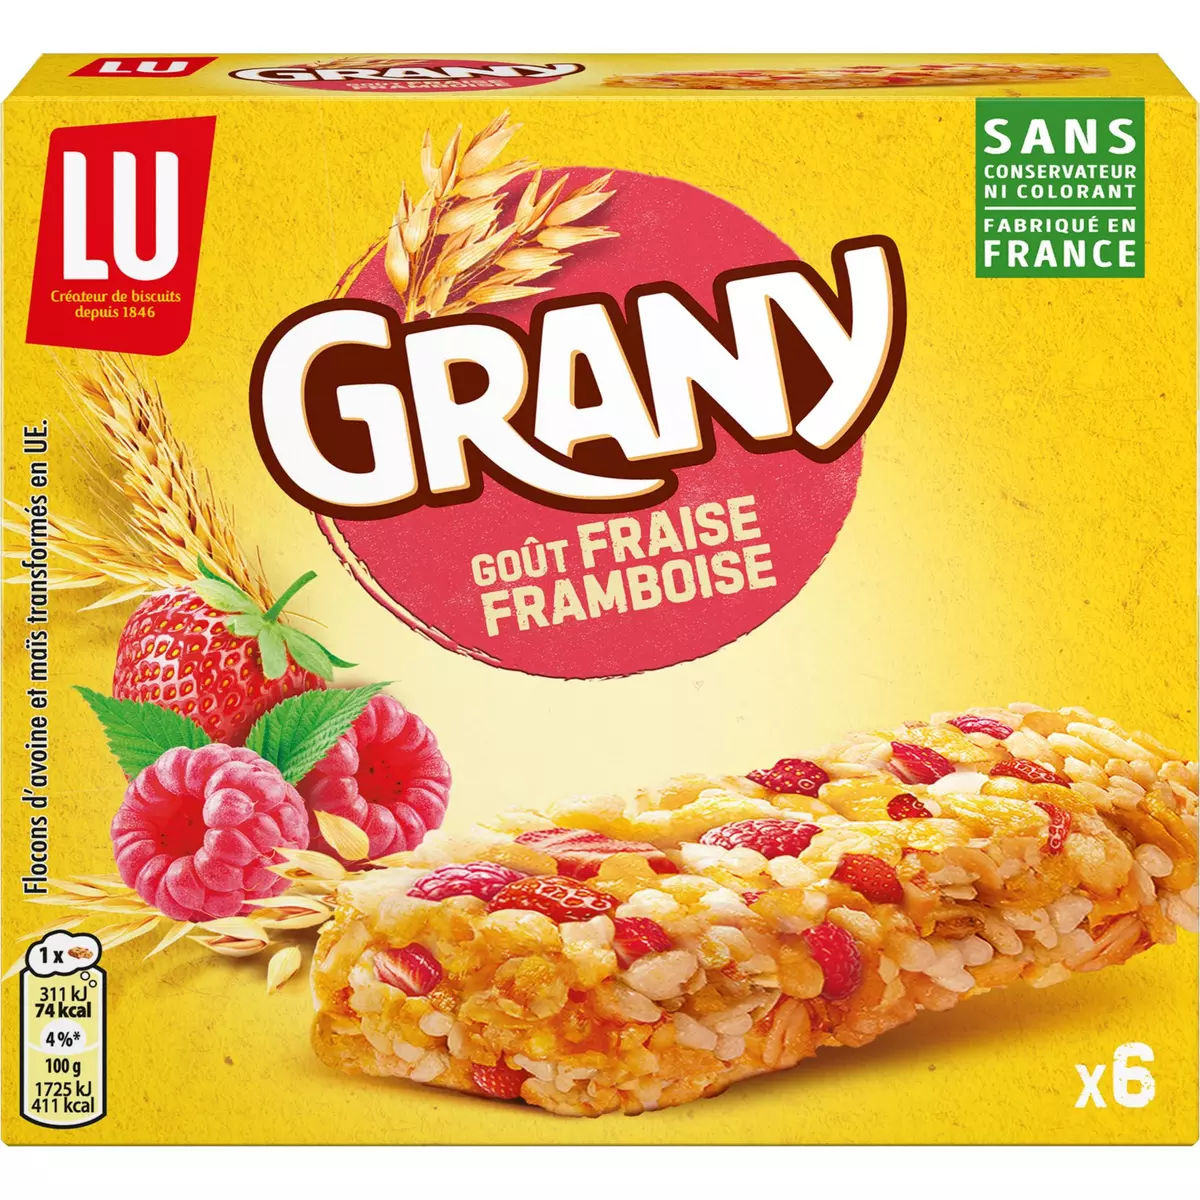 GRANY Barres de céréales aux fraises et framboises 6 barres 108g